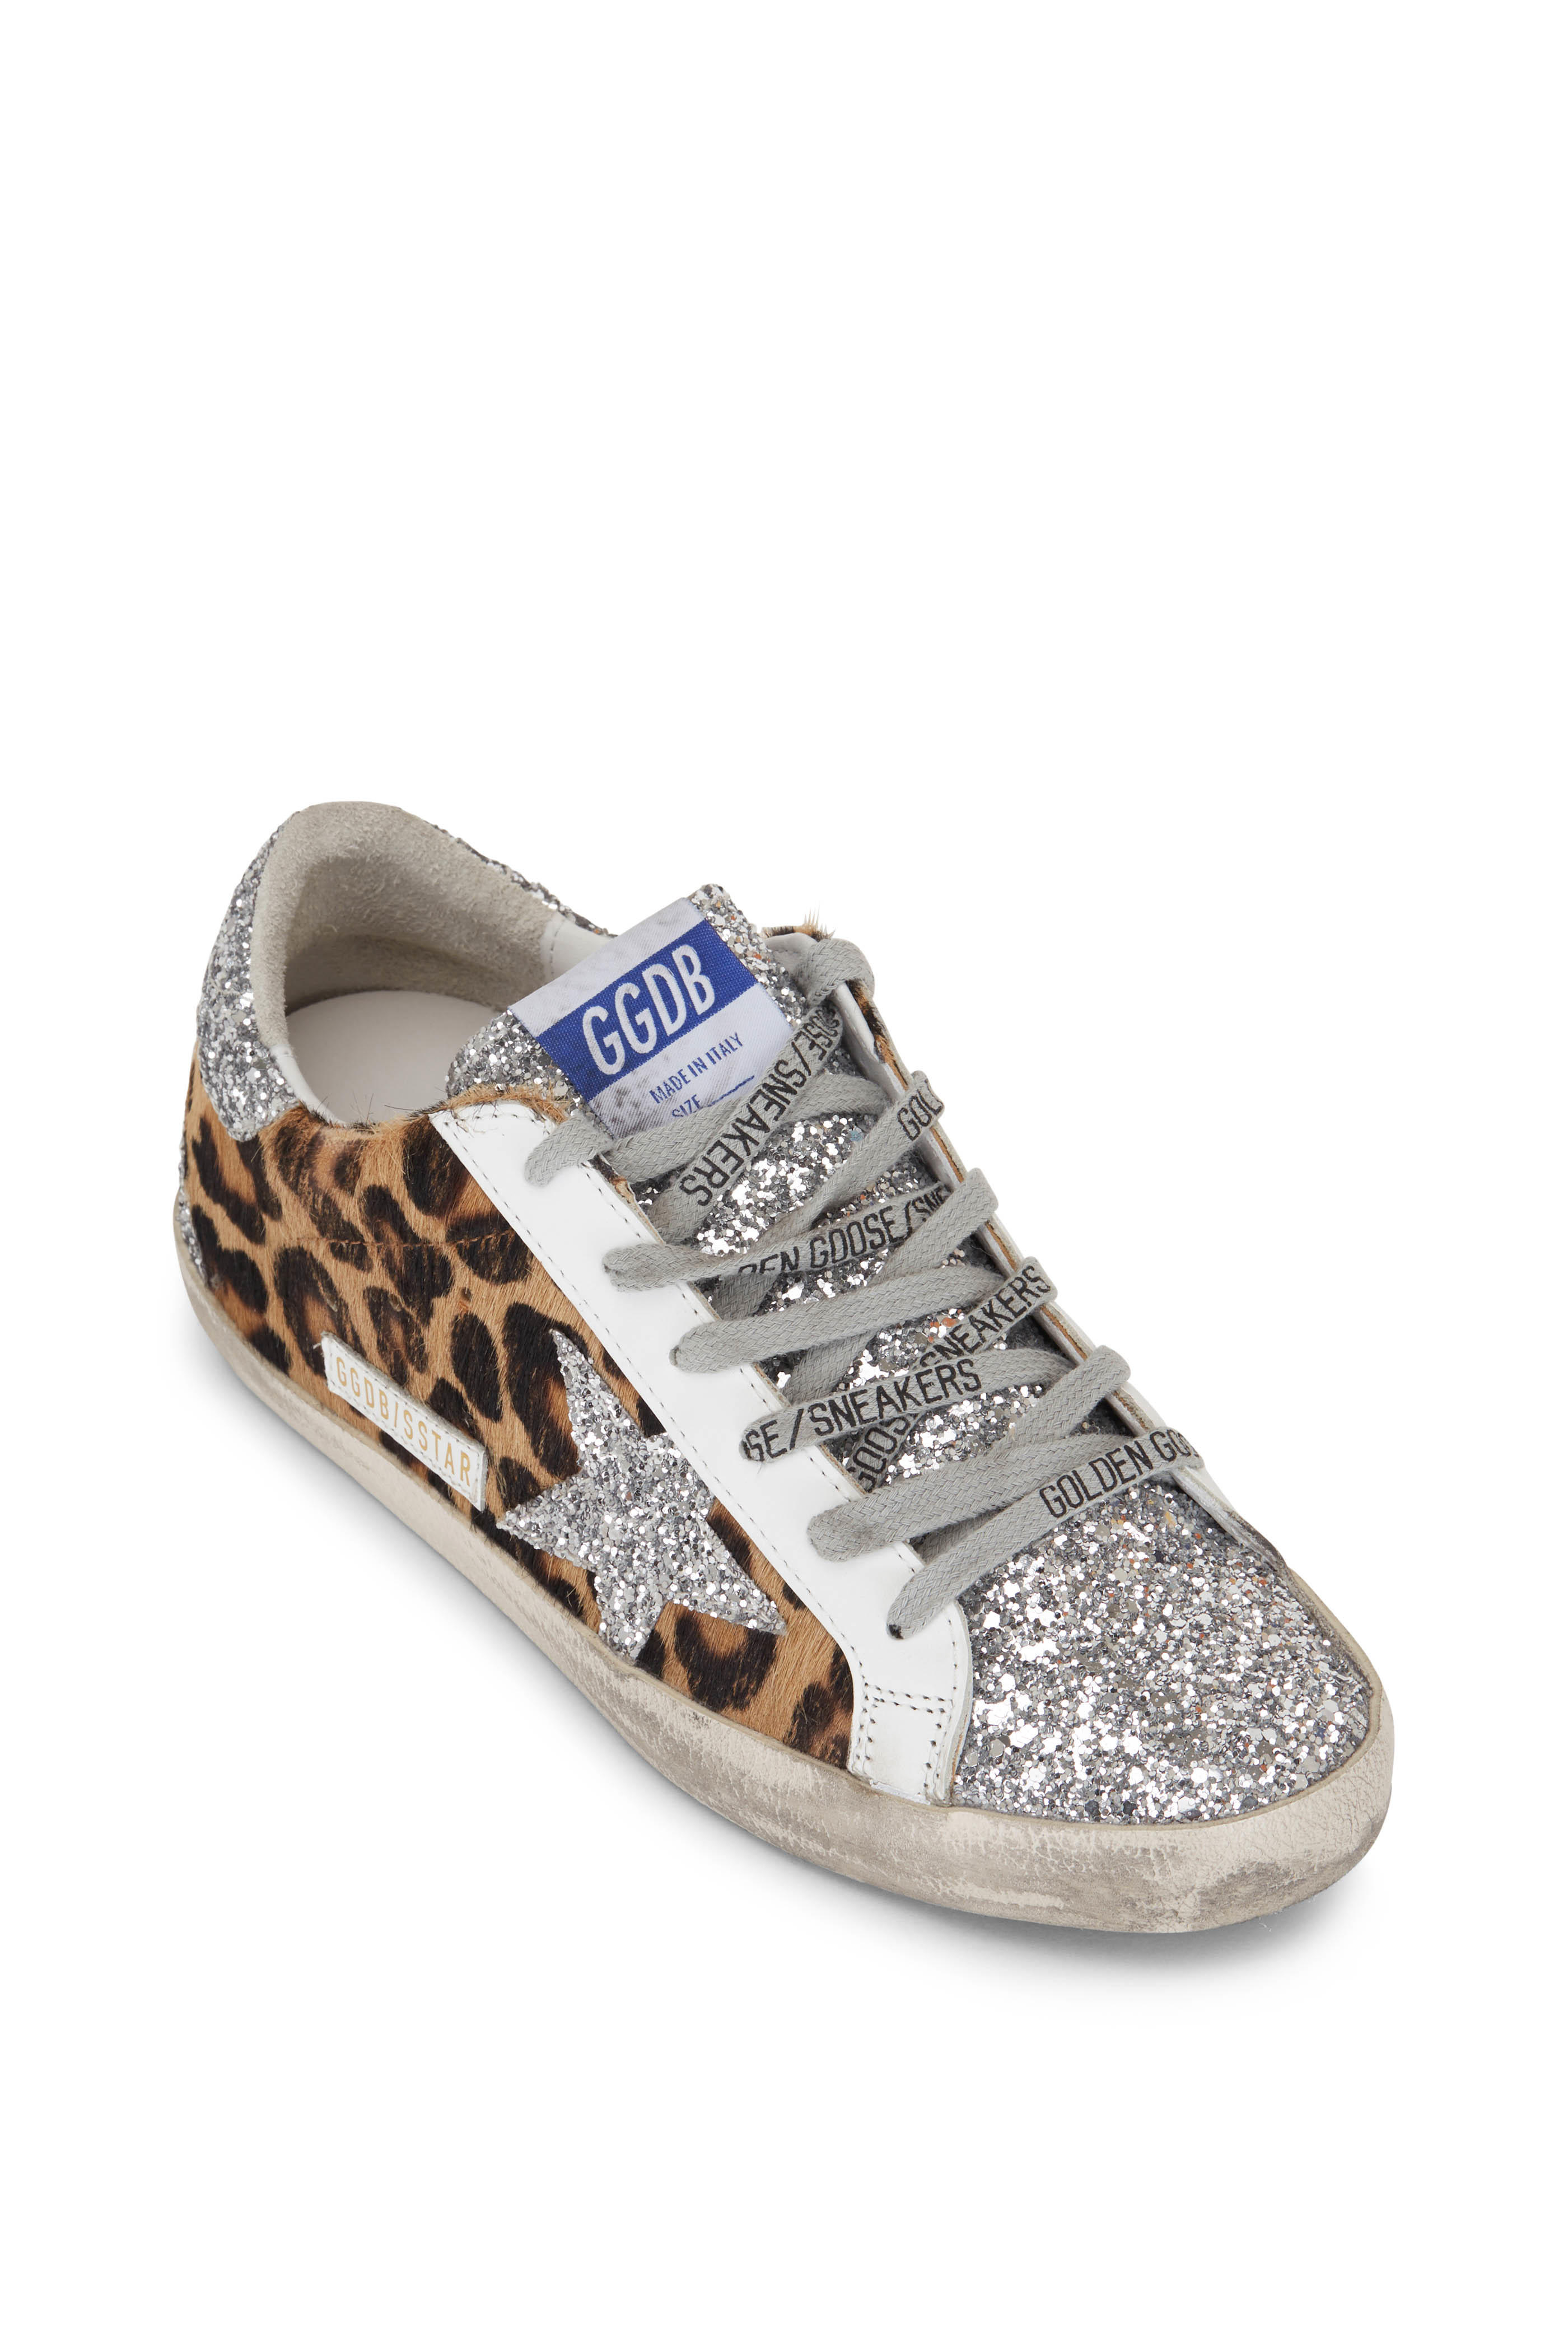 golden goose leopard high top sneakers